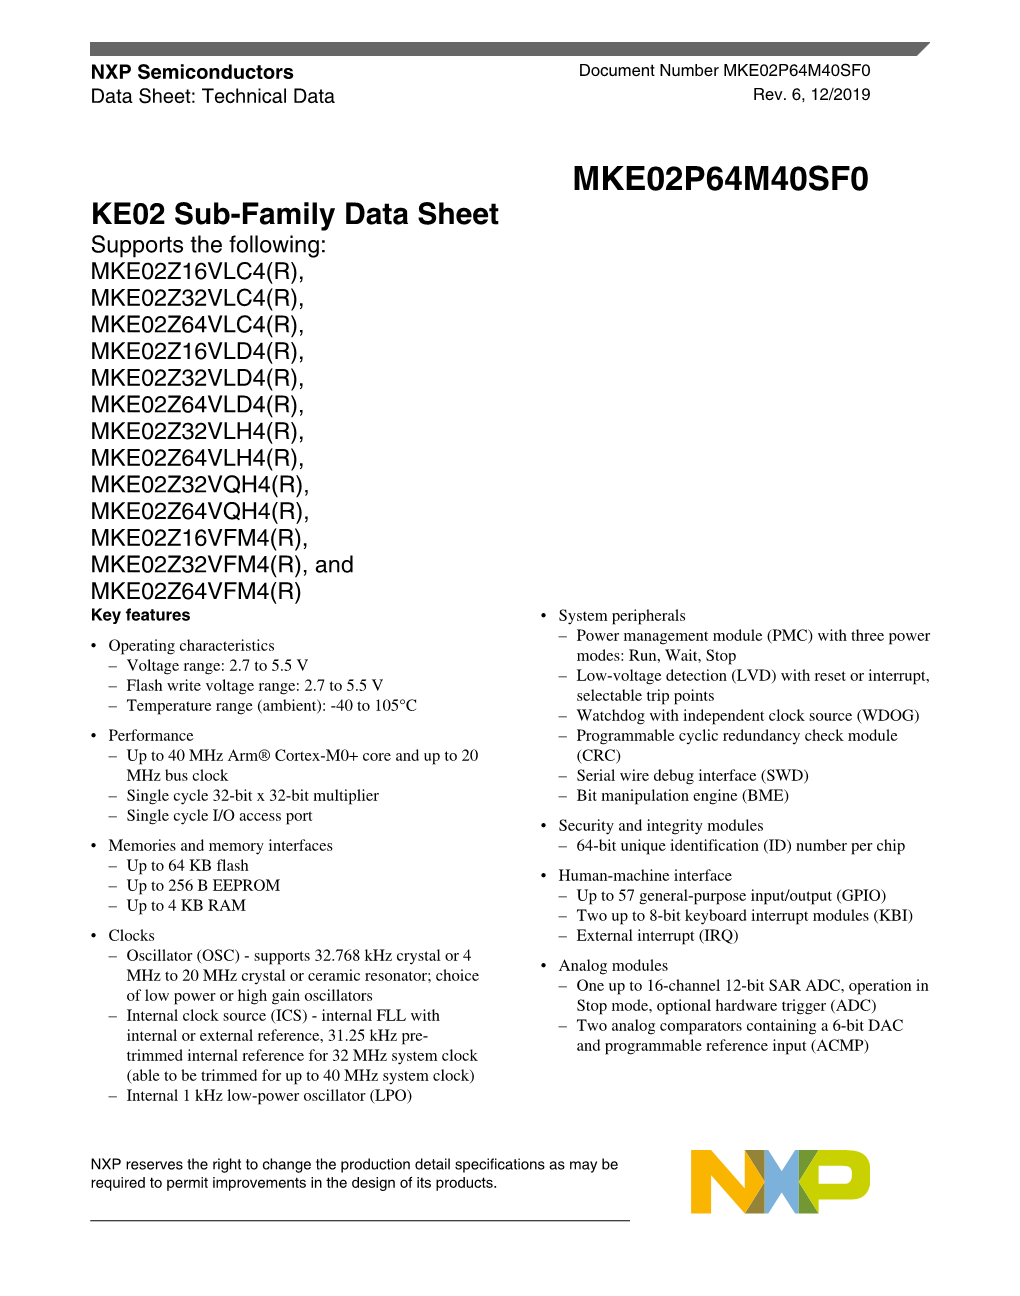 KE02 Sub-Family Data Sheet